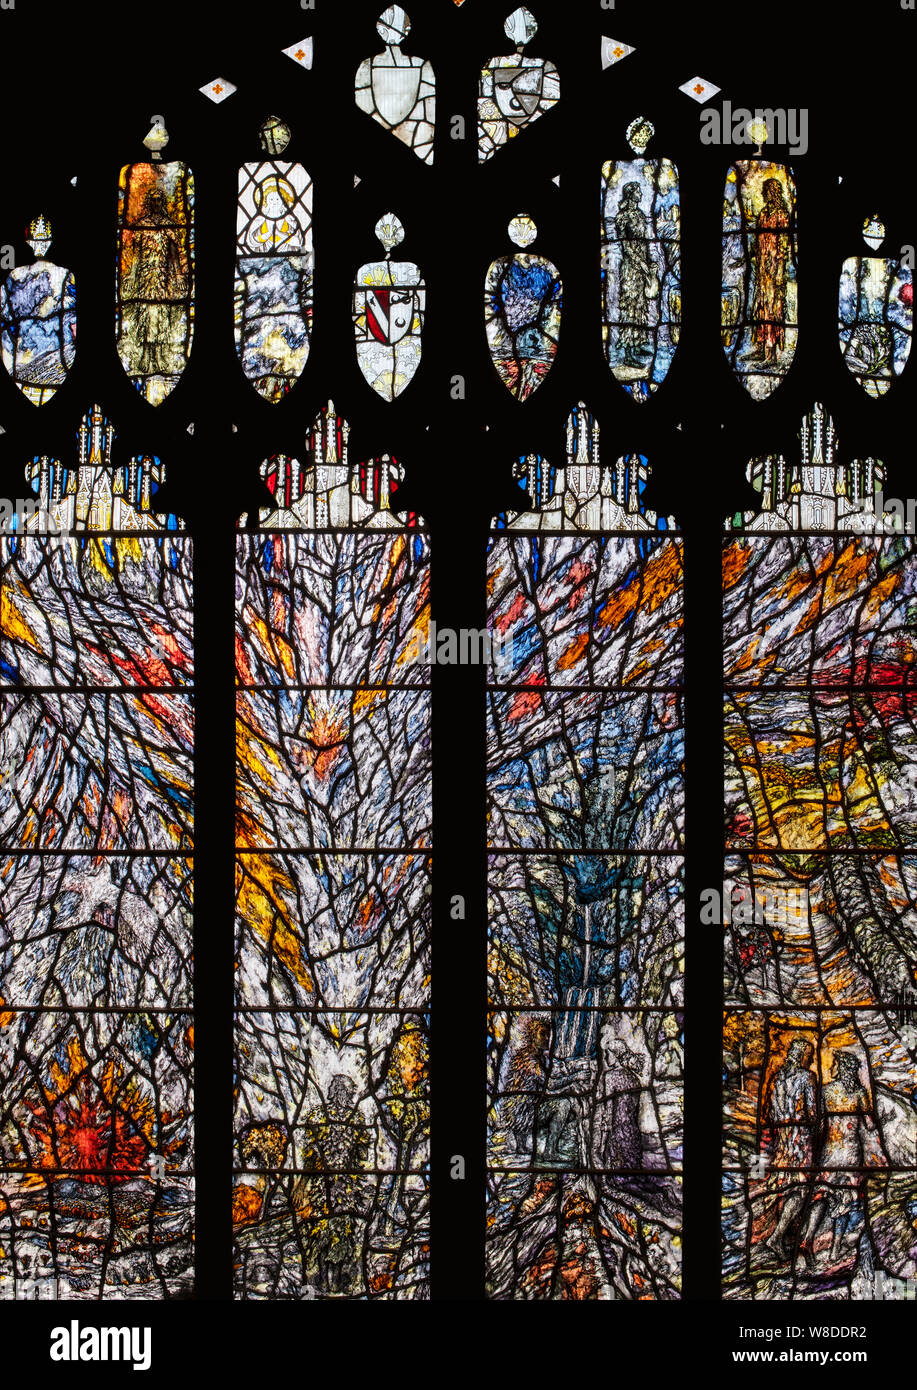 Die westliche der beiden Millennium windows von Thomas Denny, Great Malvern Priory, Worcestershire, Großbritannien Stockfoto